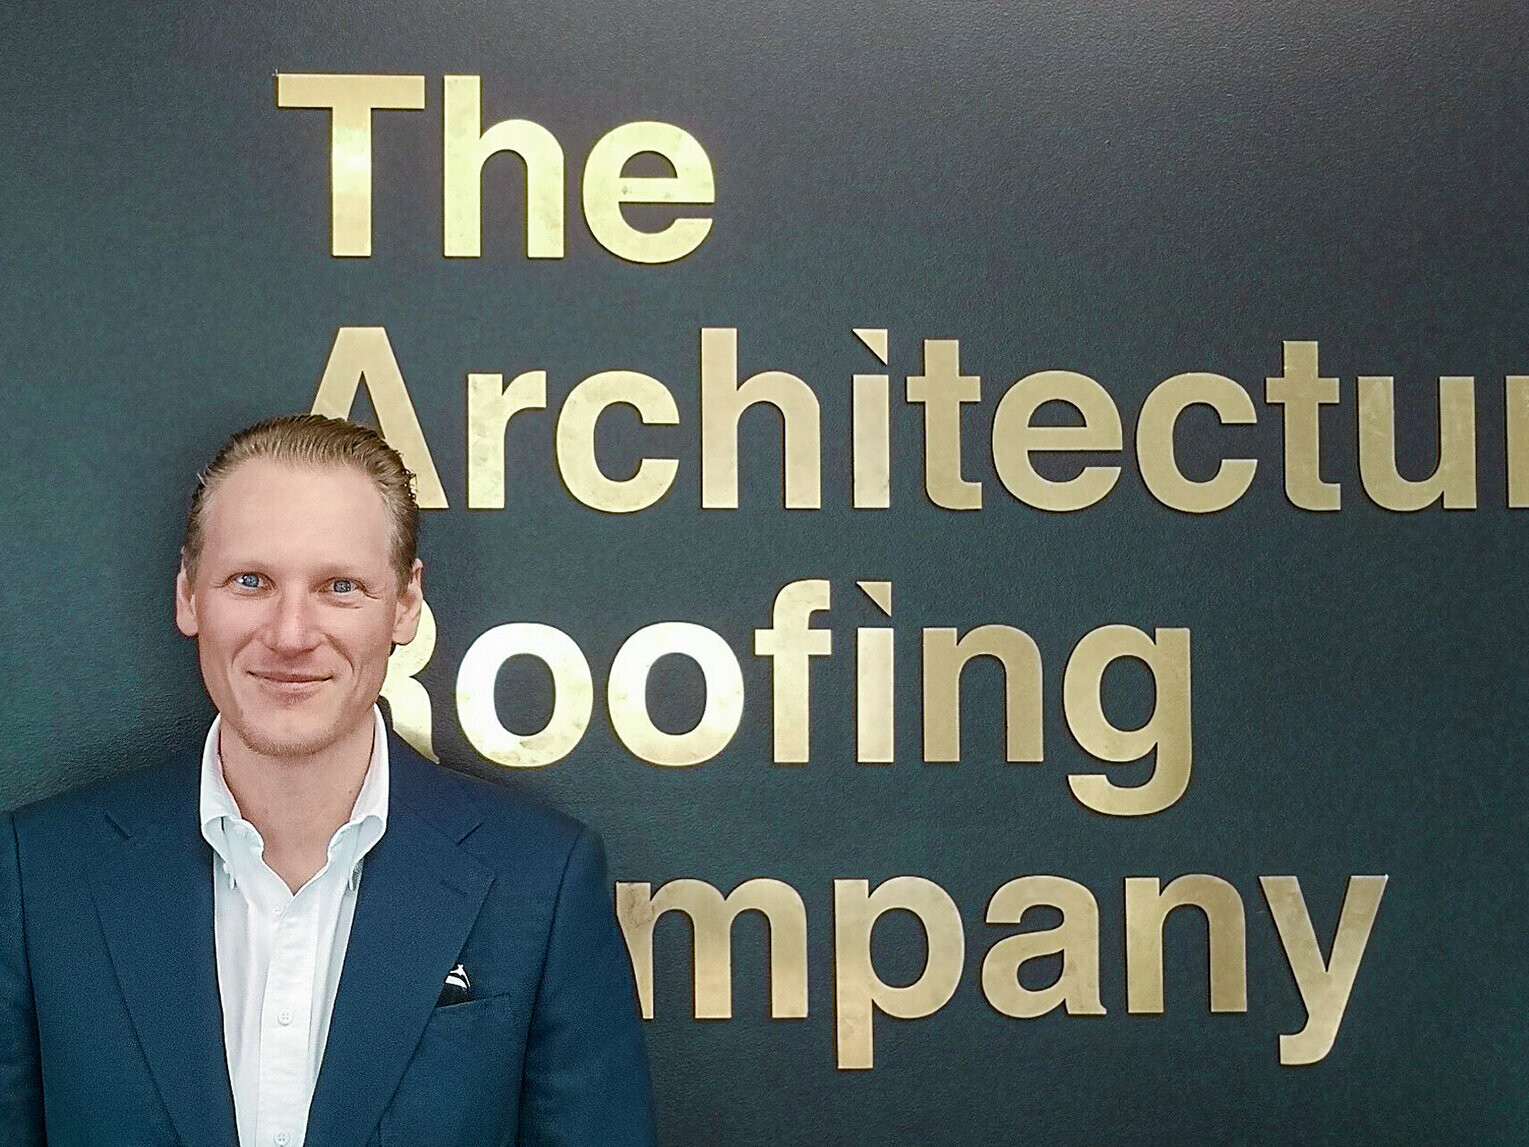 Portrait des Verarbeiters Johan Vogl, im Hintergrund der Firmenname "The Architectural Roofing Company".